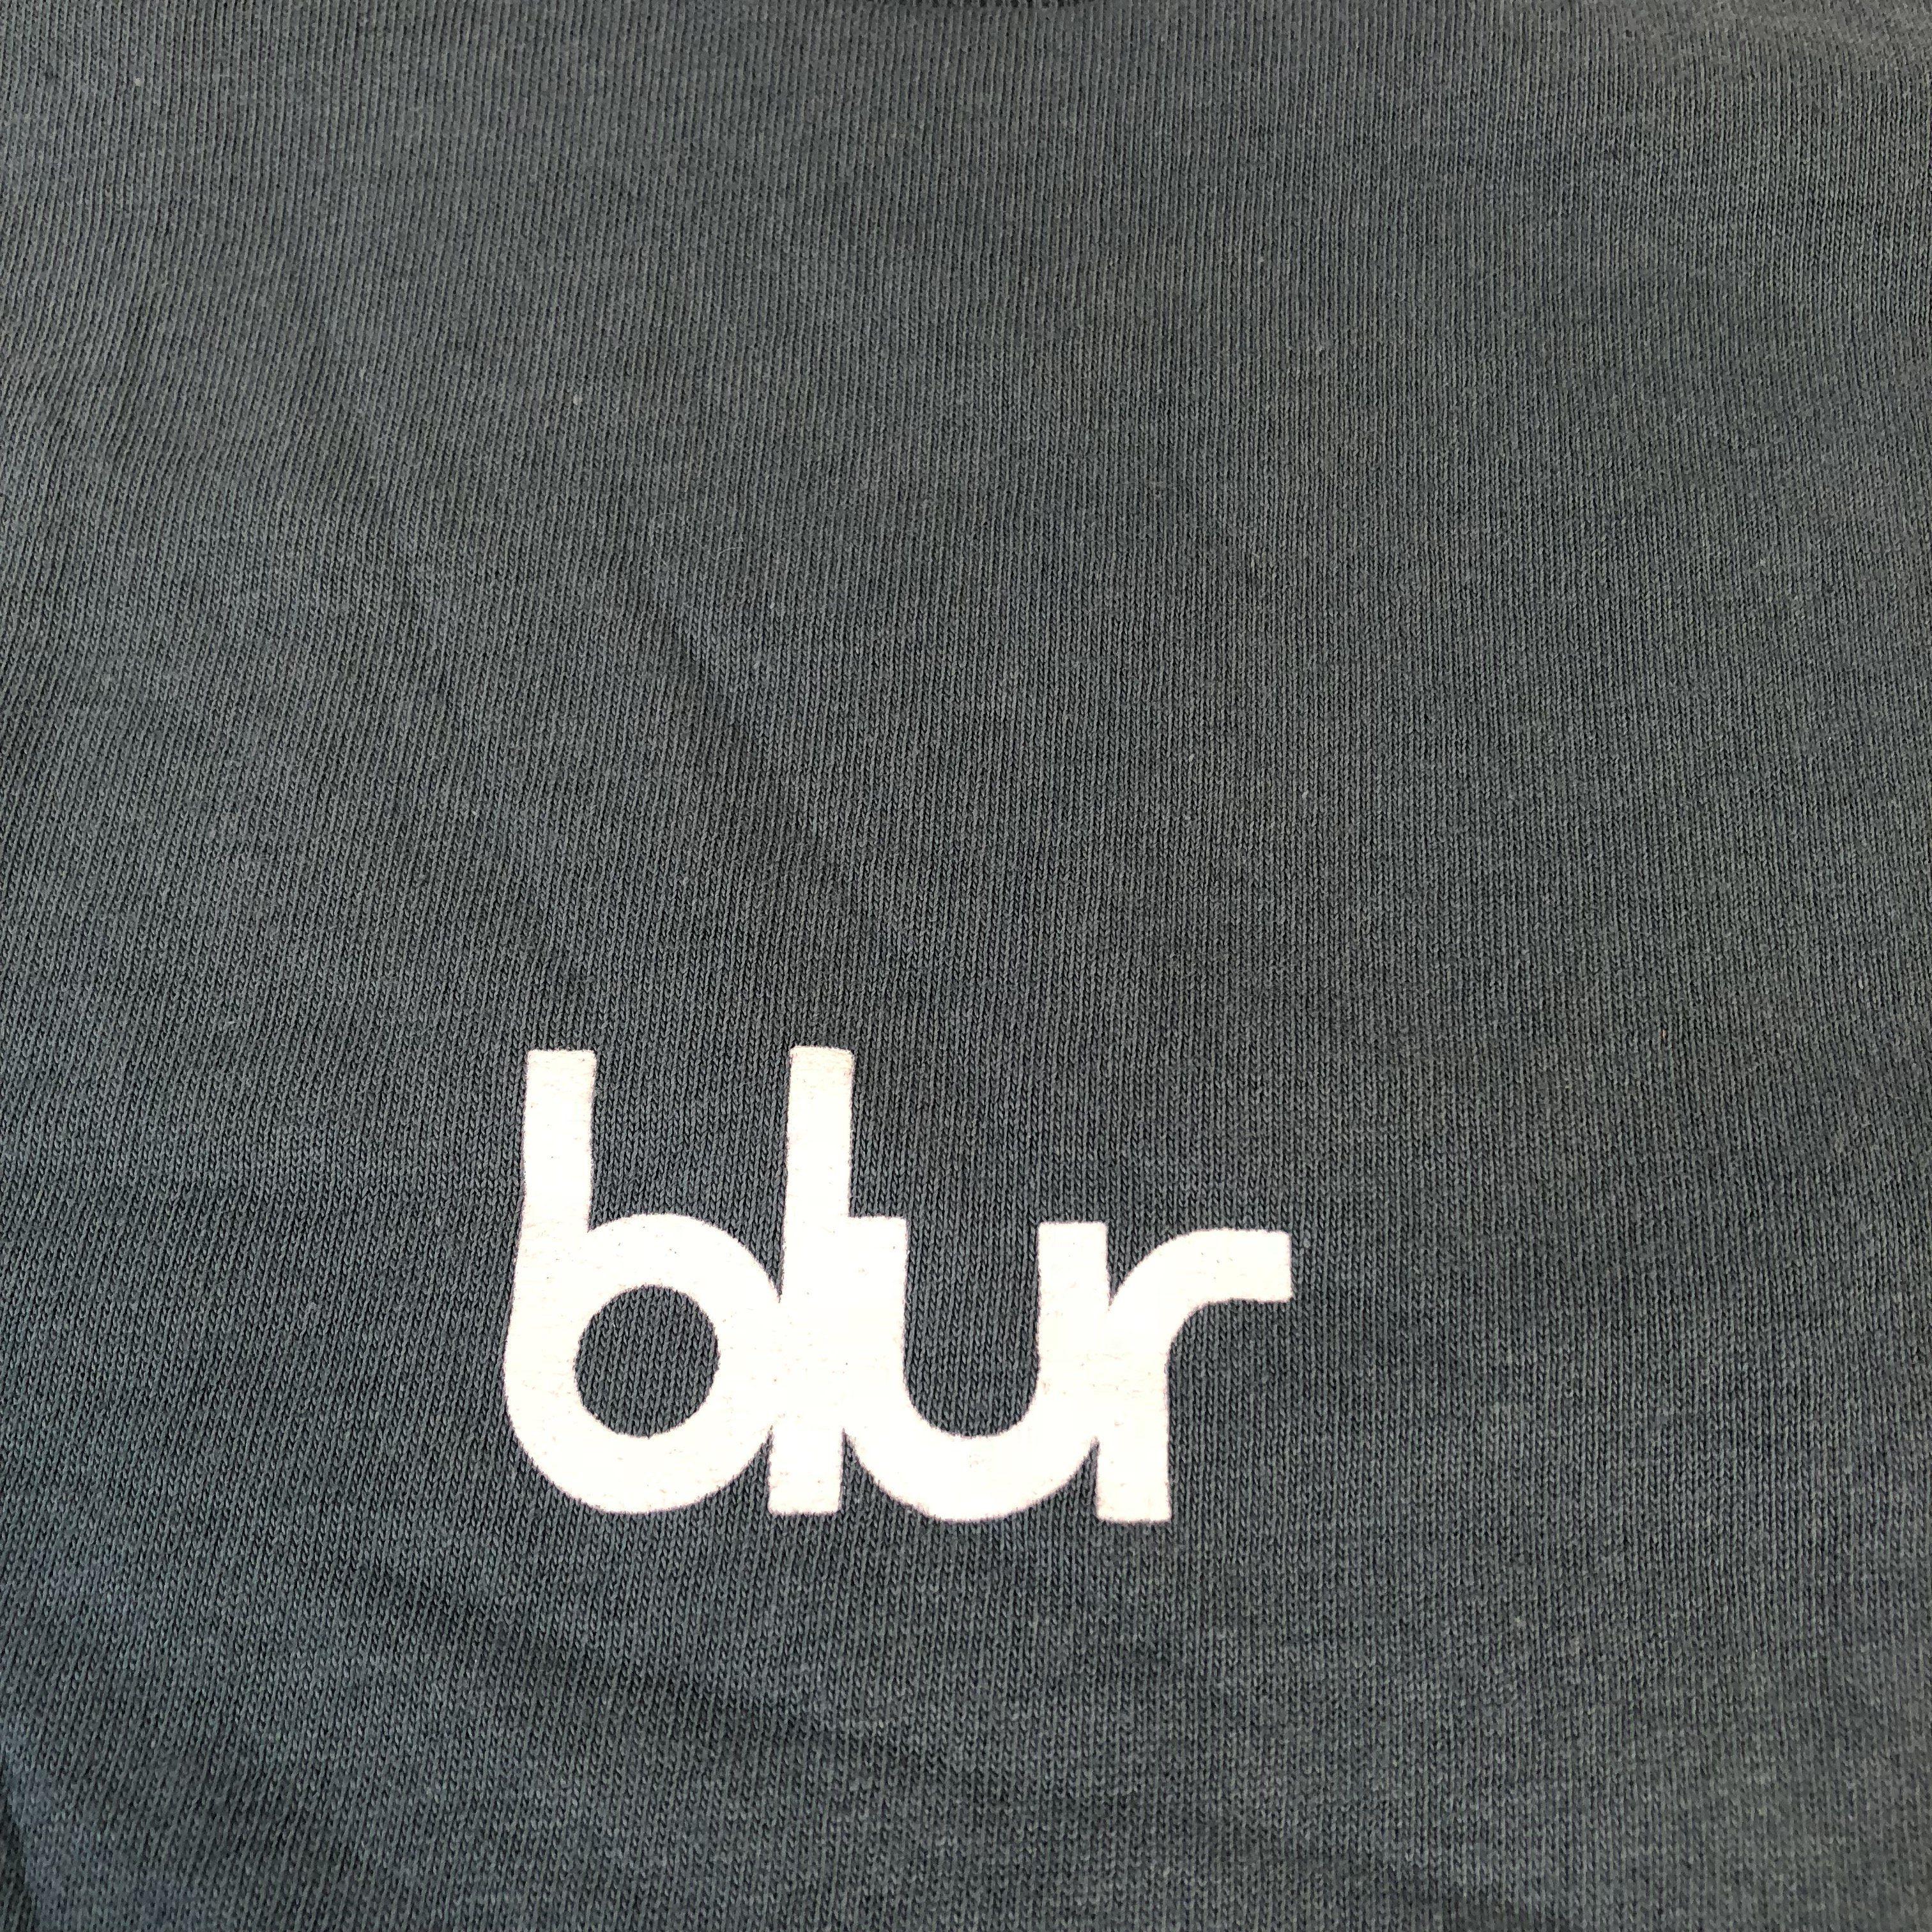 Blur Logo - Vintage Blur 